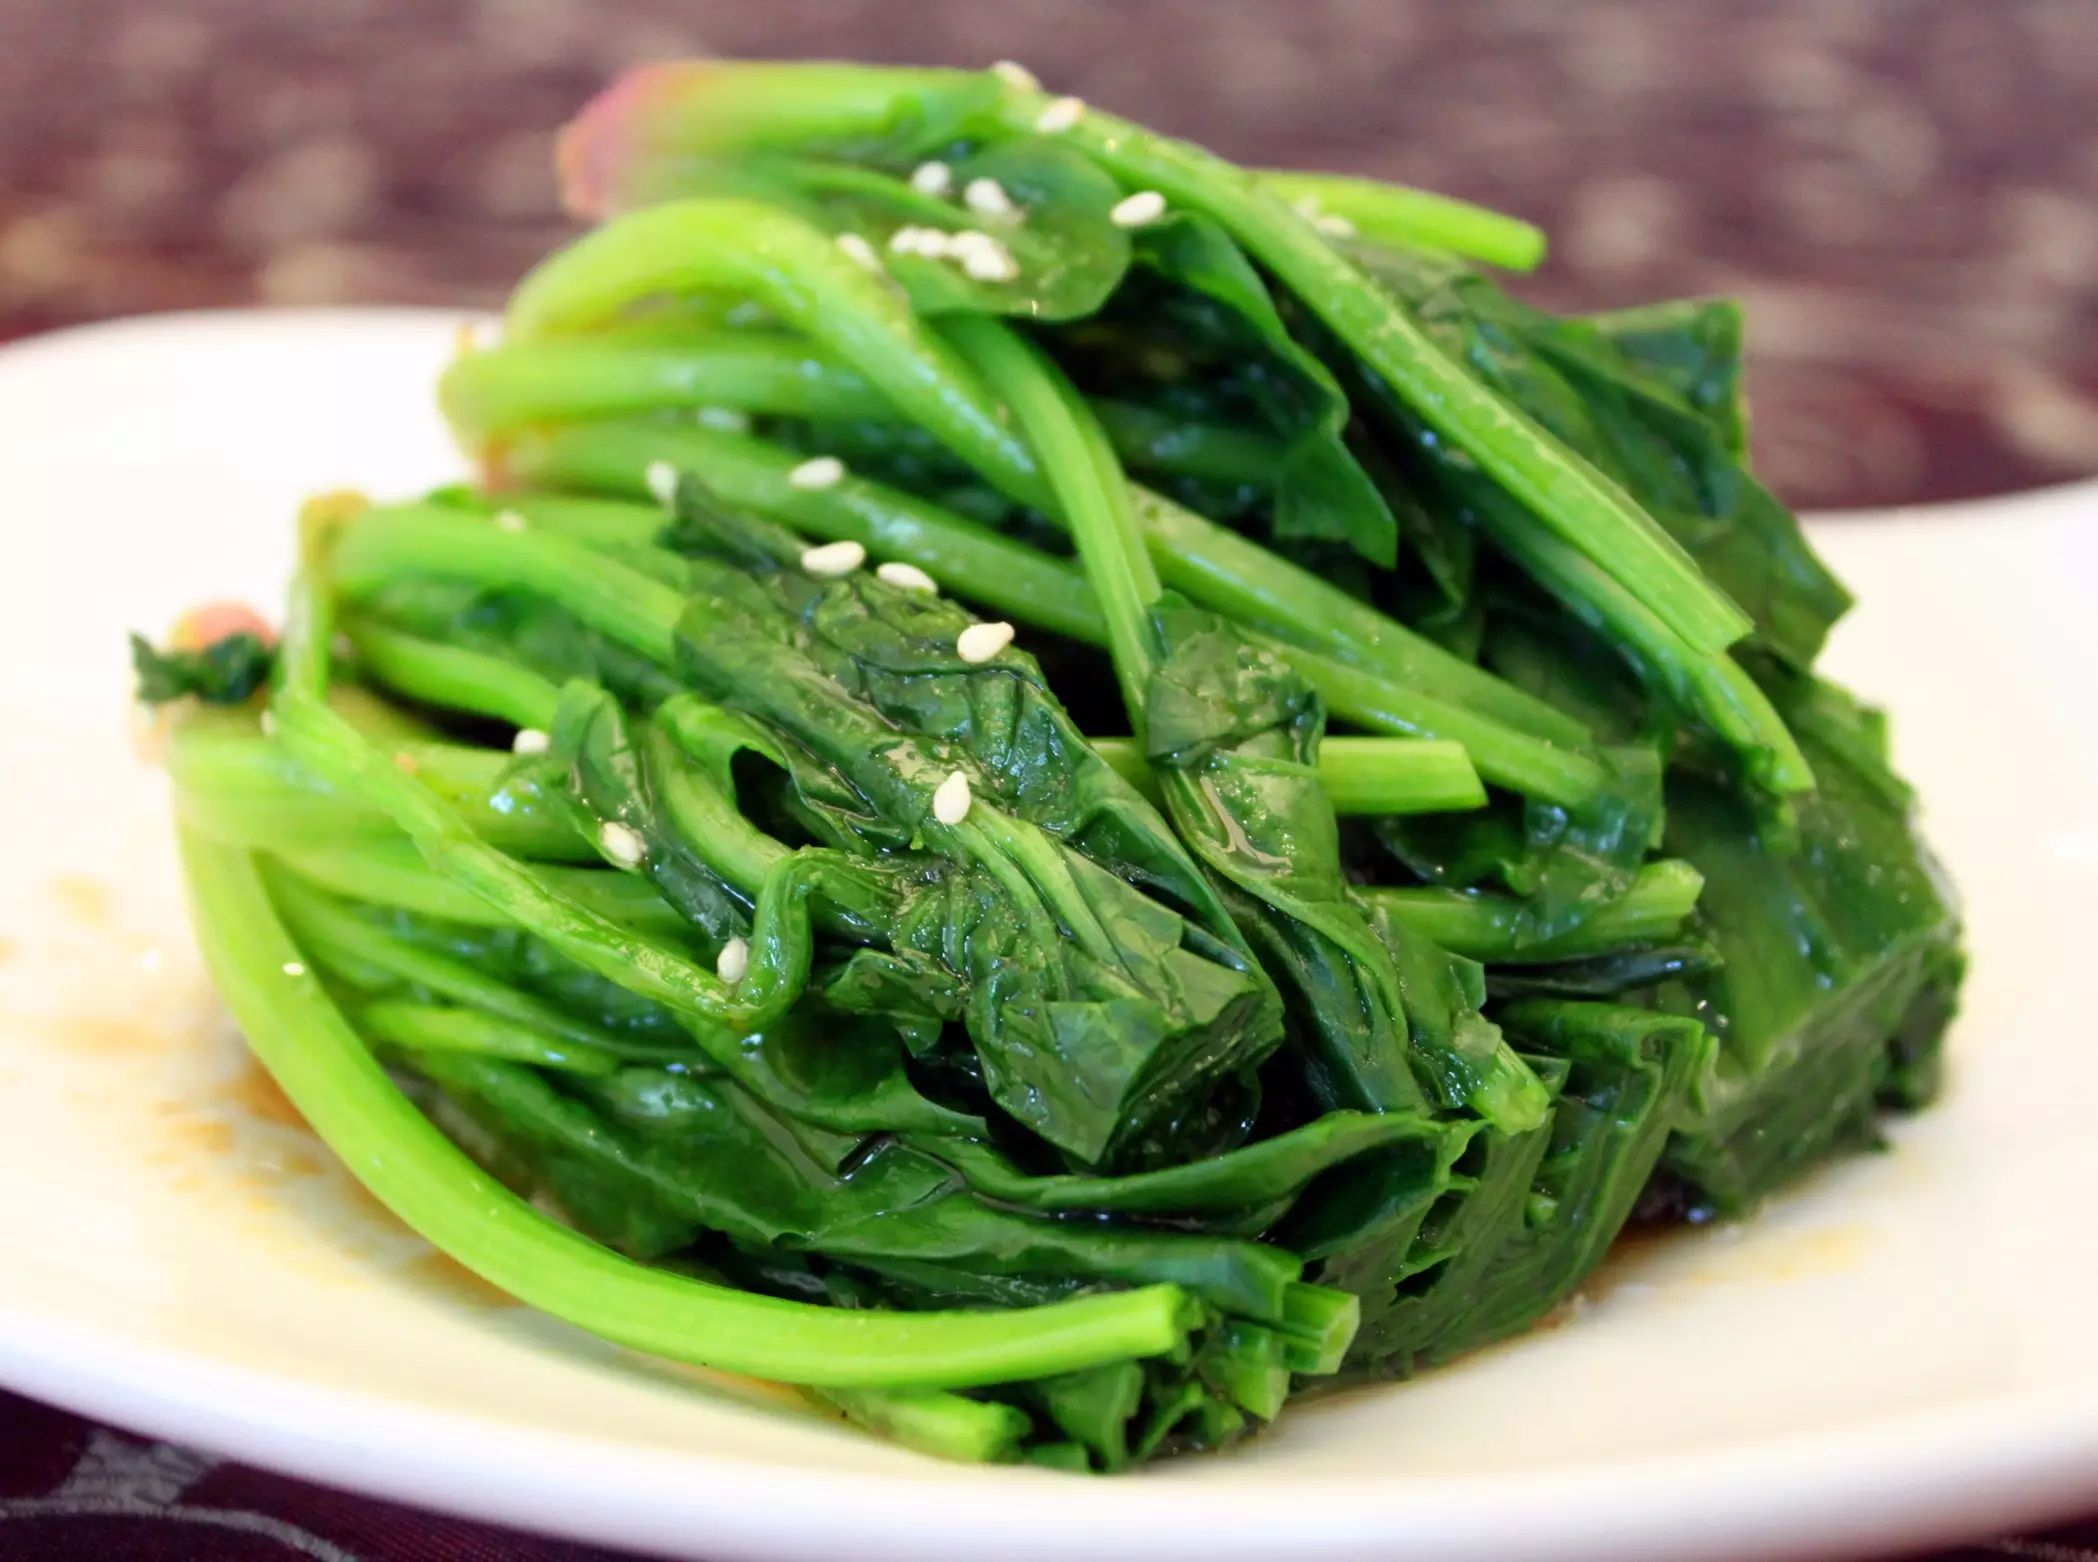 温馨提示:食用菠菜前先焯一下 菠菜富含的草酸极易溶于热水,所以在